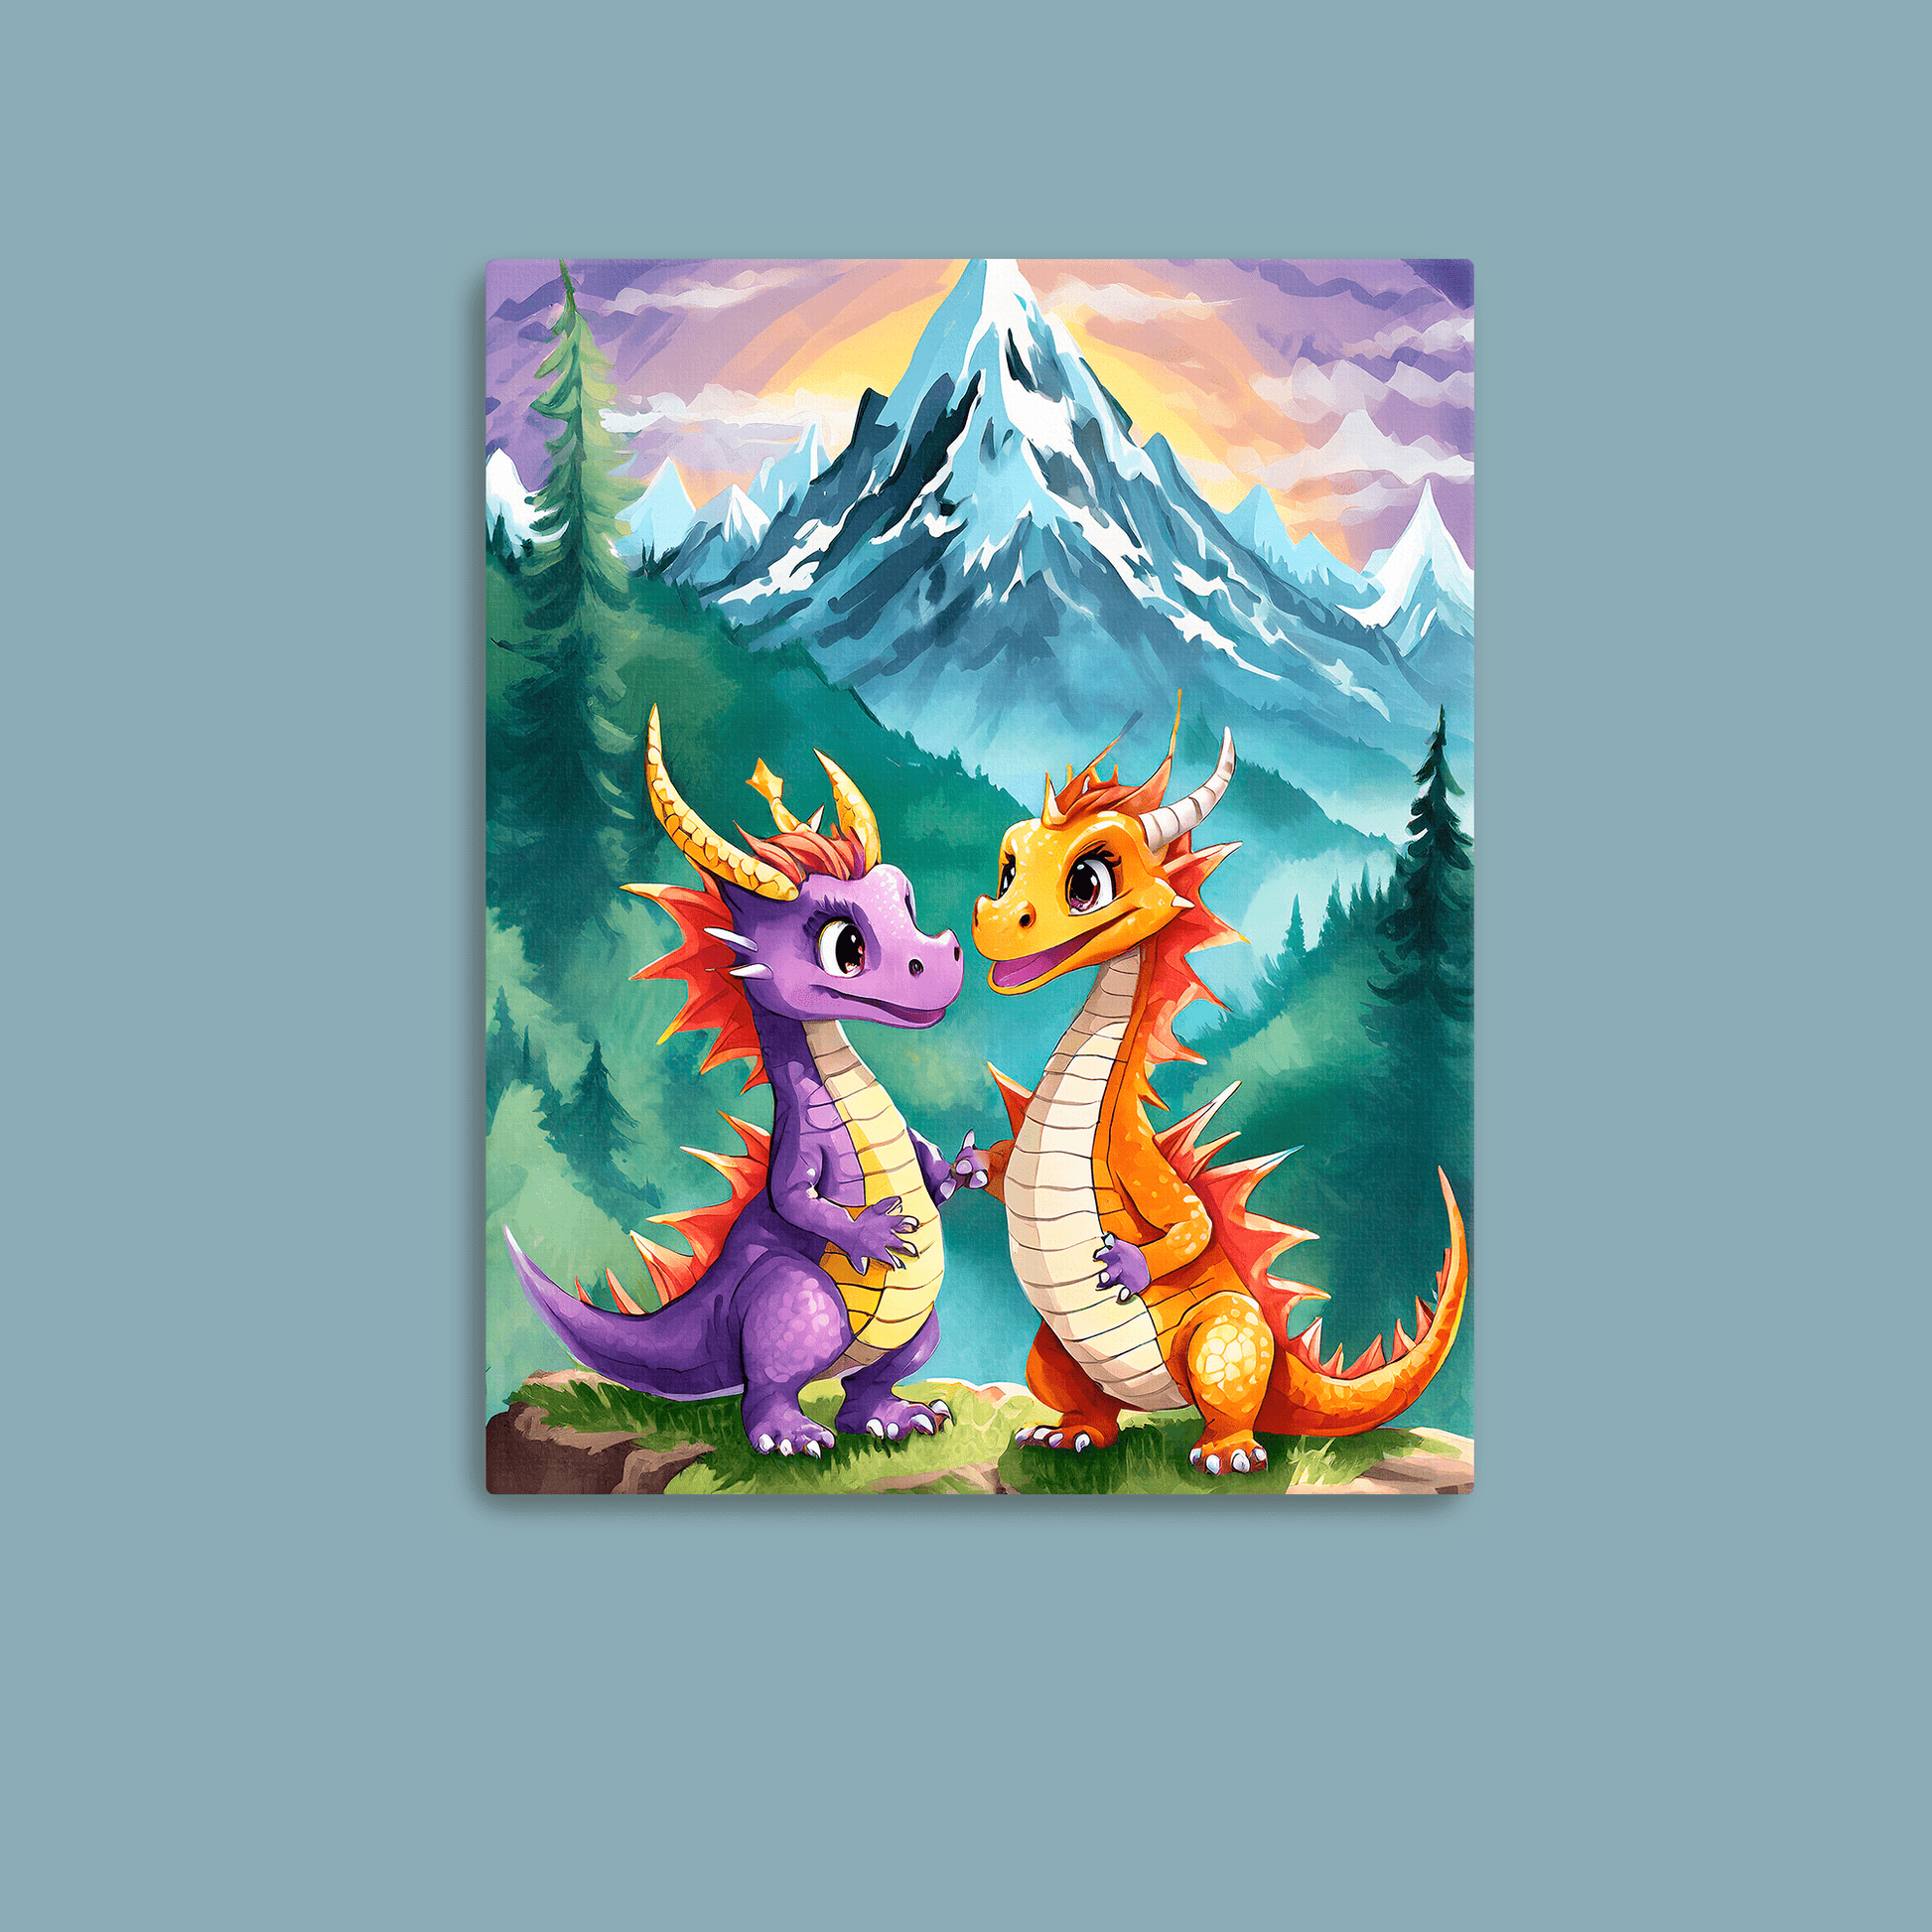 Baby Dragons Mountains - Metal Poster - Premium Metal Print